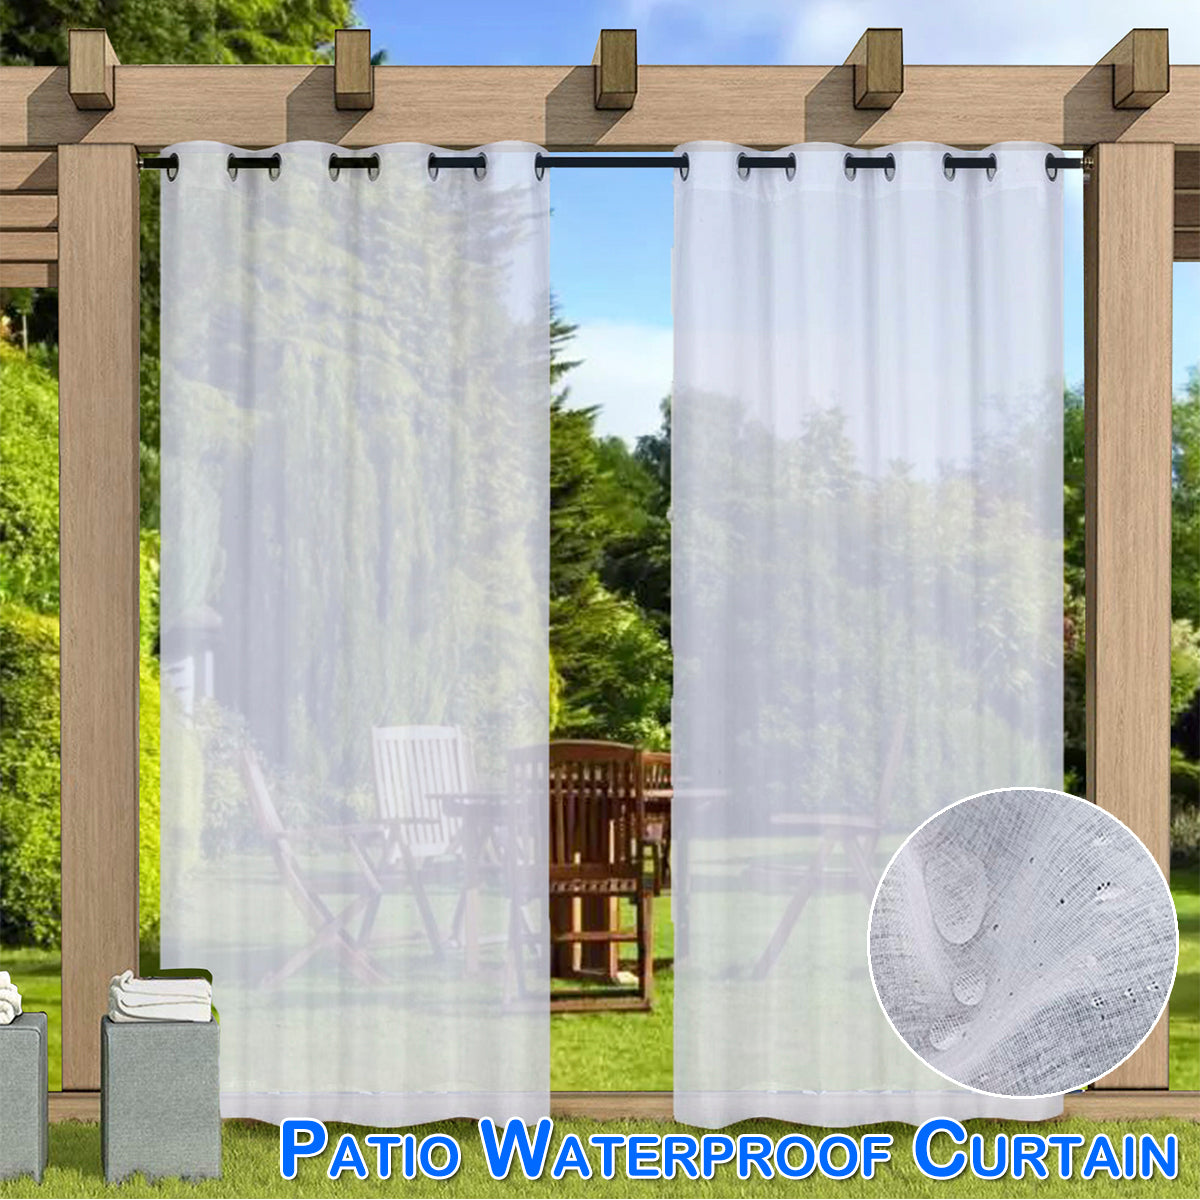 Waterproof curtain